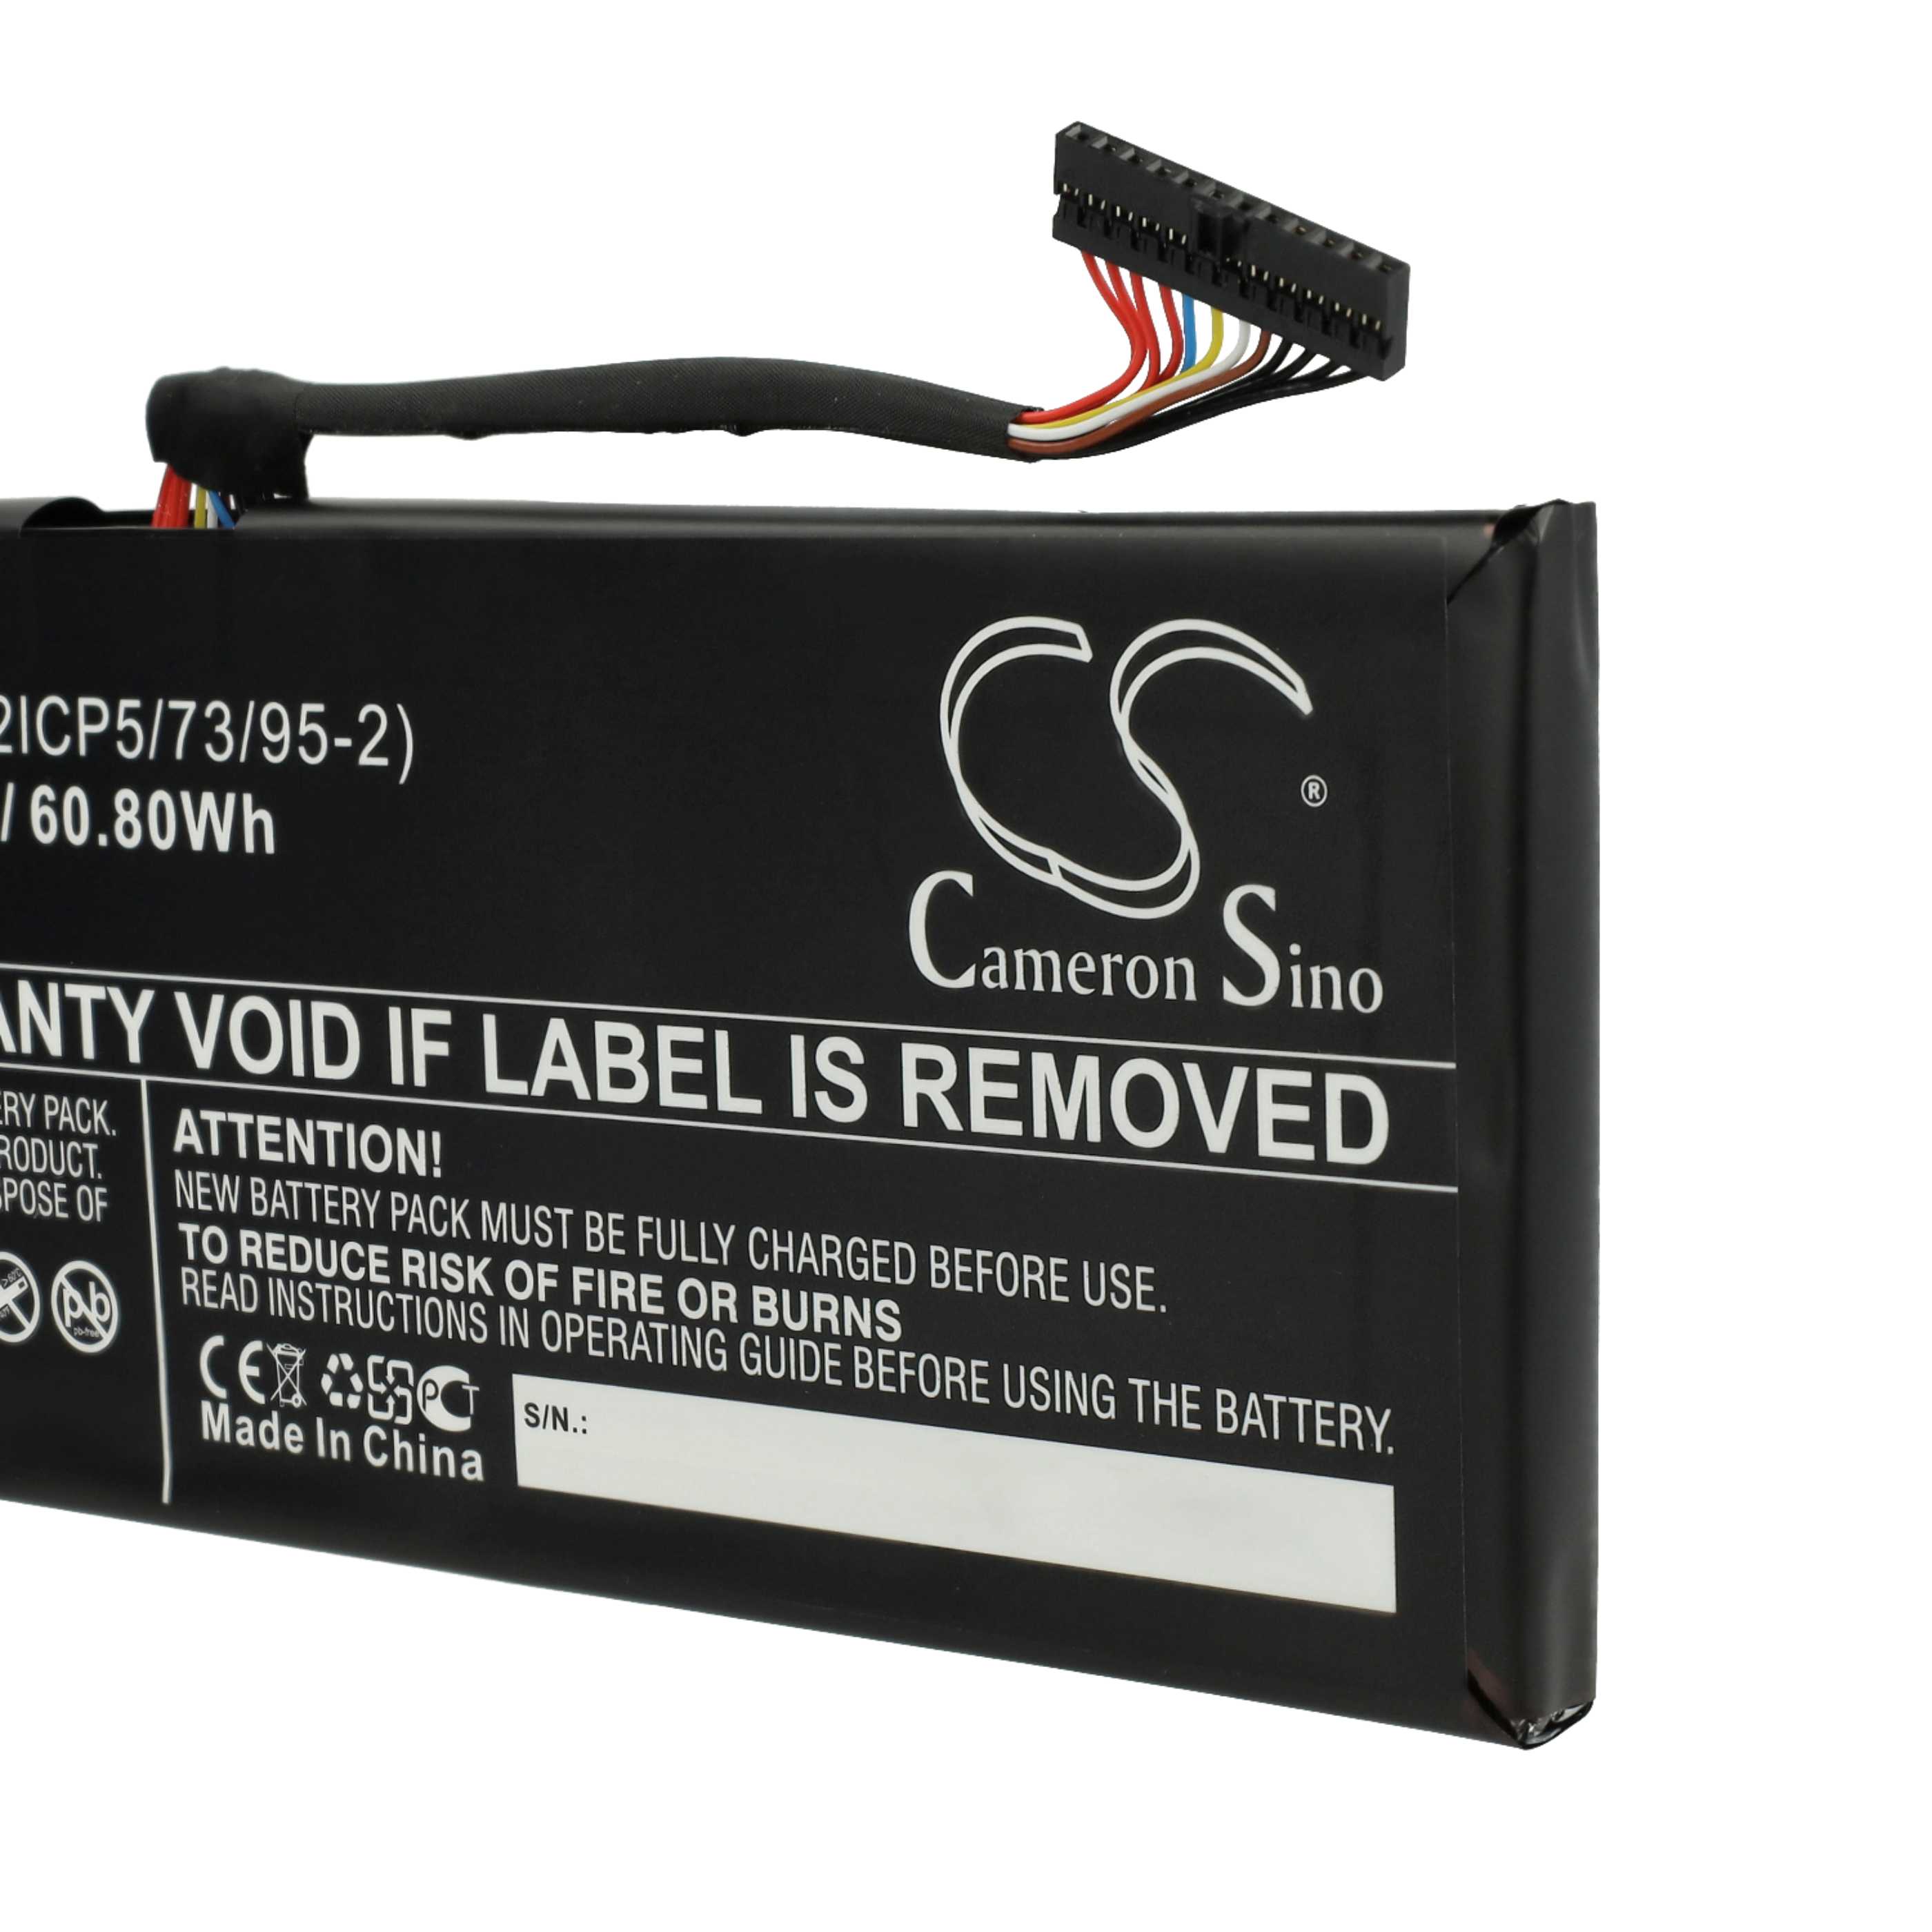 Batterie remplace MSI BTY-M47, BTY-M47(2ICP5/73/95-2) pour ordinateur portable - 8060mAh 7,6V Li-ion, noir